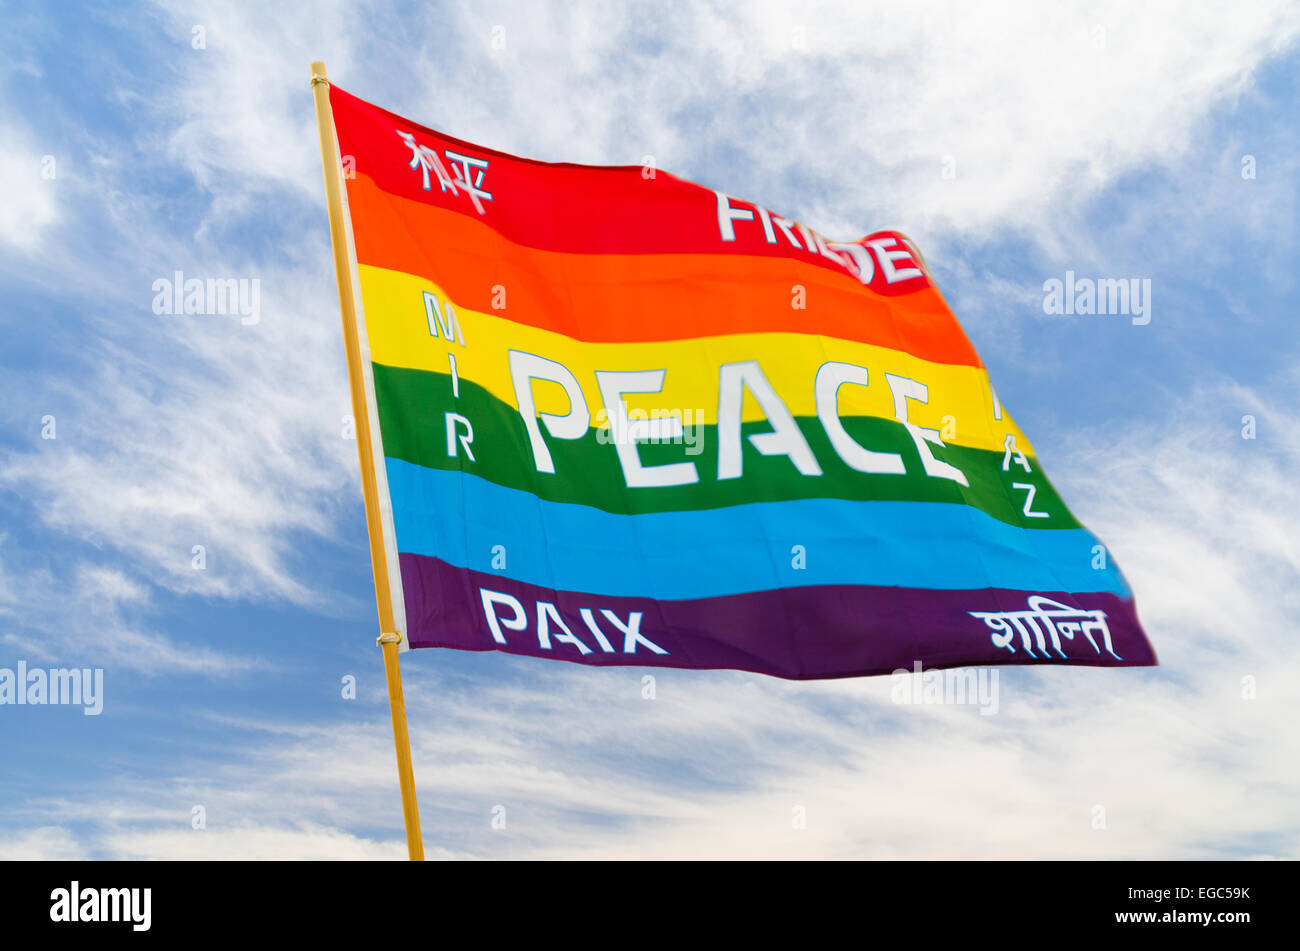 Arc-en-ciel en agitant des drapeaux de la paix multicolores avec texte multilingue pacific flying sur le vent contre le ciel bleu Banque D'Images